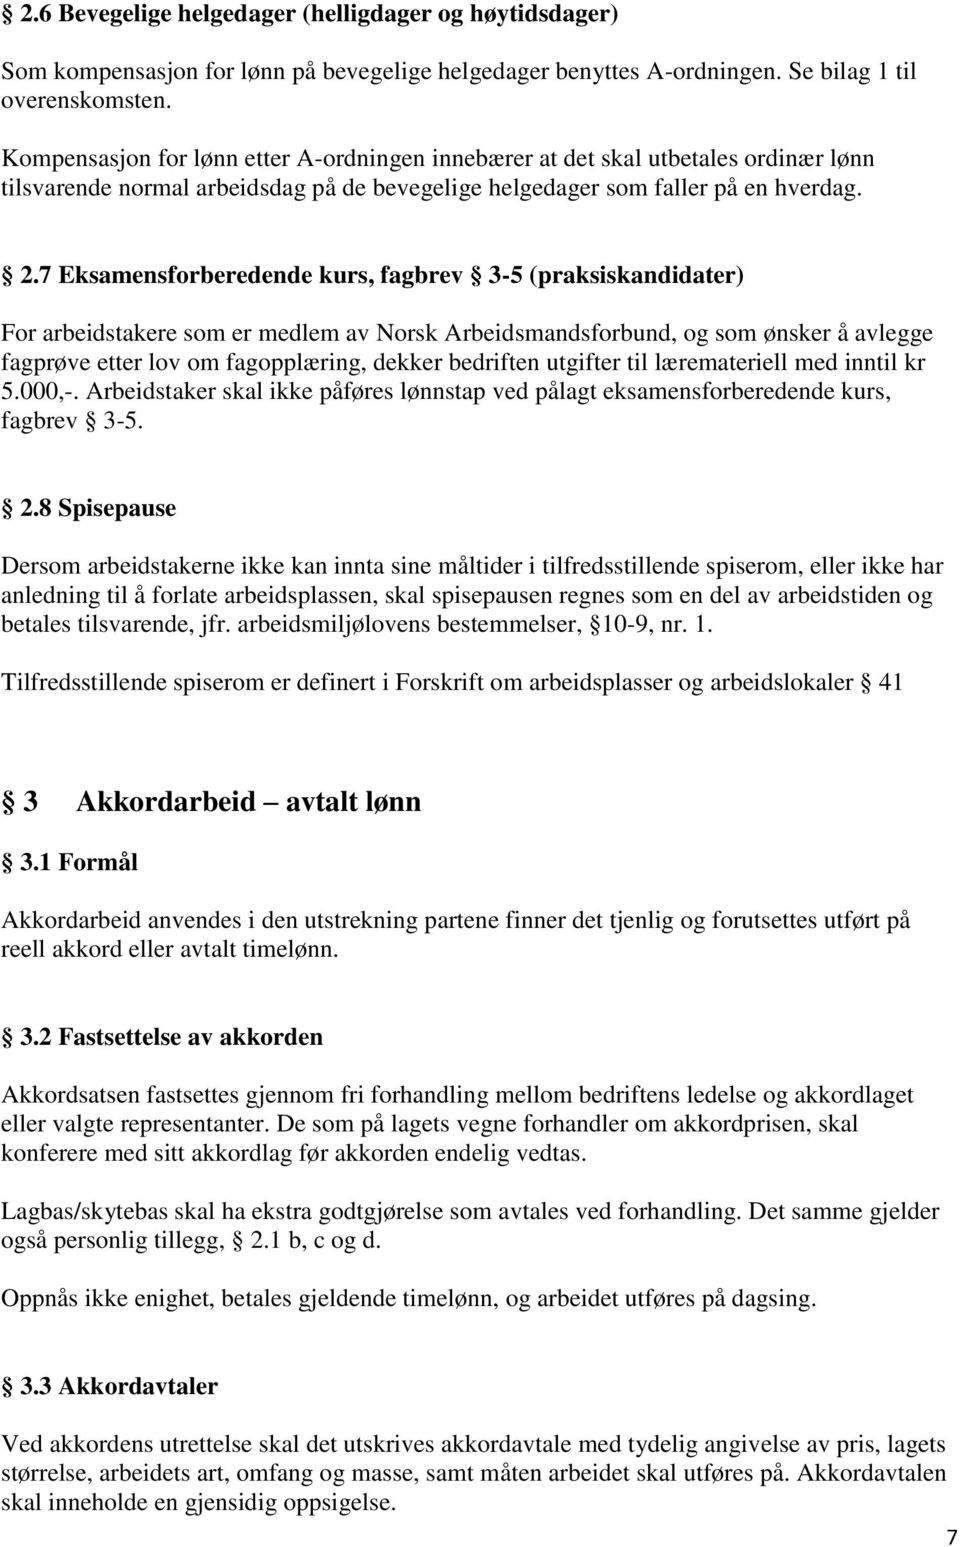 7 Eksamensforberedende kurs, fagbrev 3-5 (praksiskandidater) For arbeidstakere som er medlem av Norsk Arbeidsmandsforbund, og som ønsker å avlegge fagprøve etter lov om fagopplæring, dekker bedriften